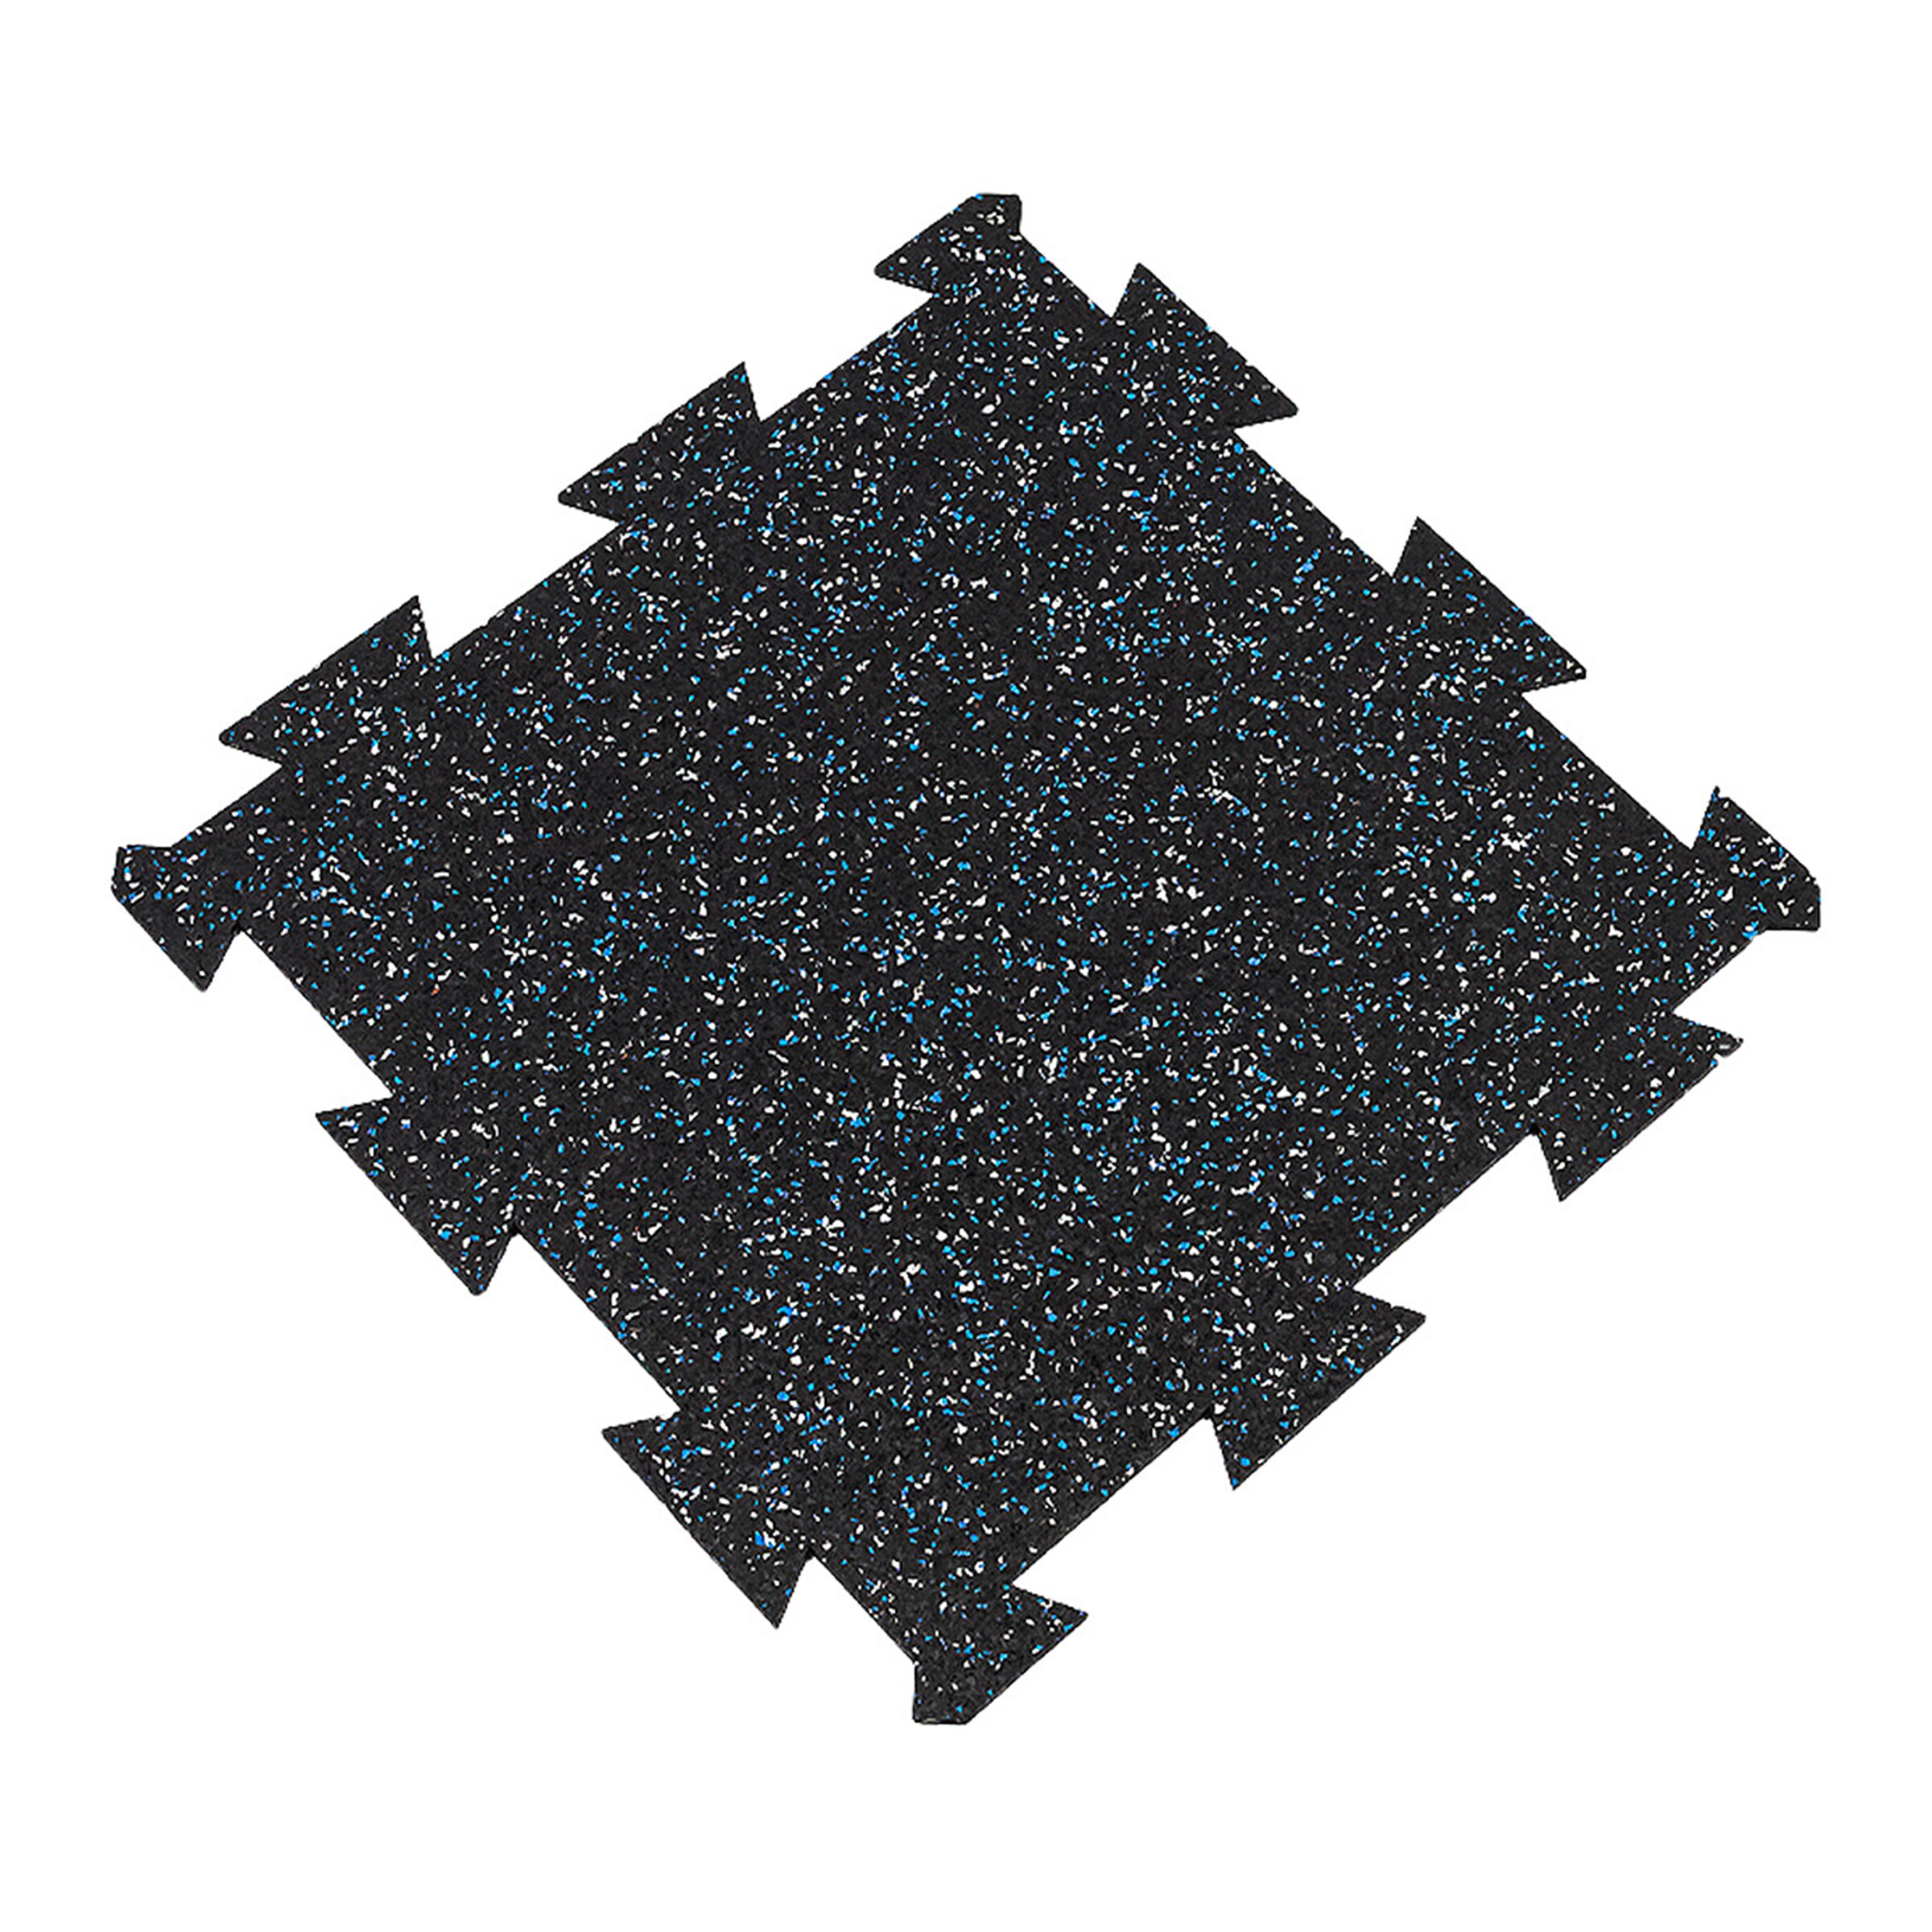 Čierno-bielo-modrá gumová modulová puzzle dlažba (stred) FLOMA FitFlo SF1050 - dĺžka 50 cm, šírka 50 cm, výška 0,8 cm